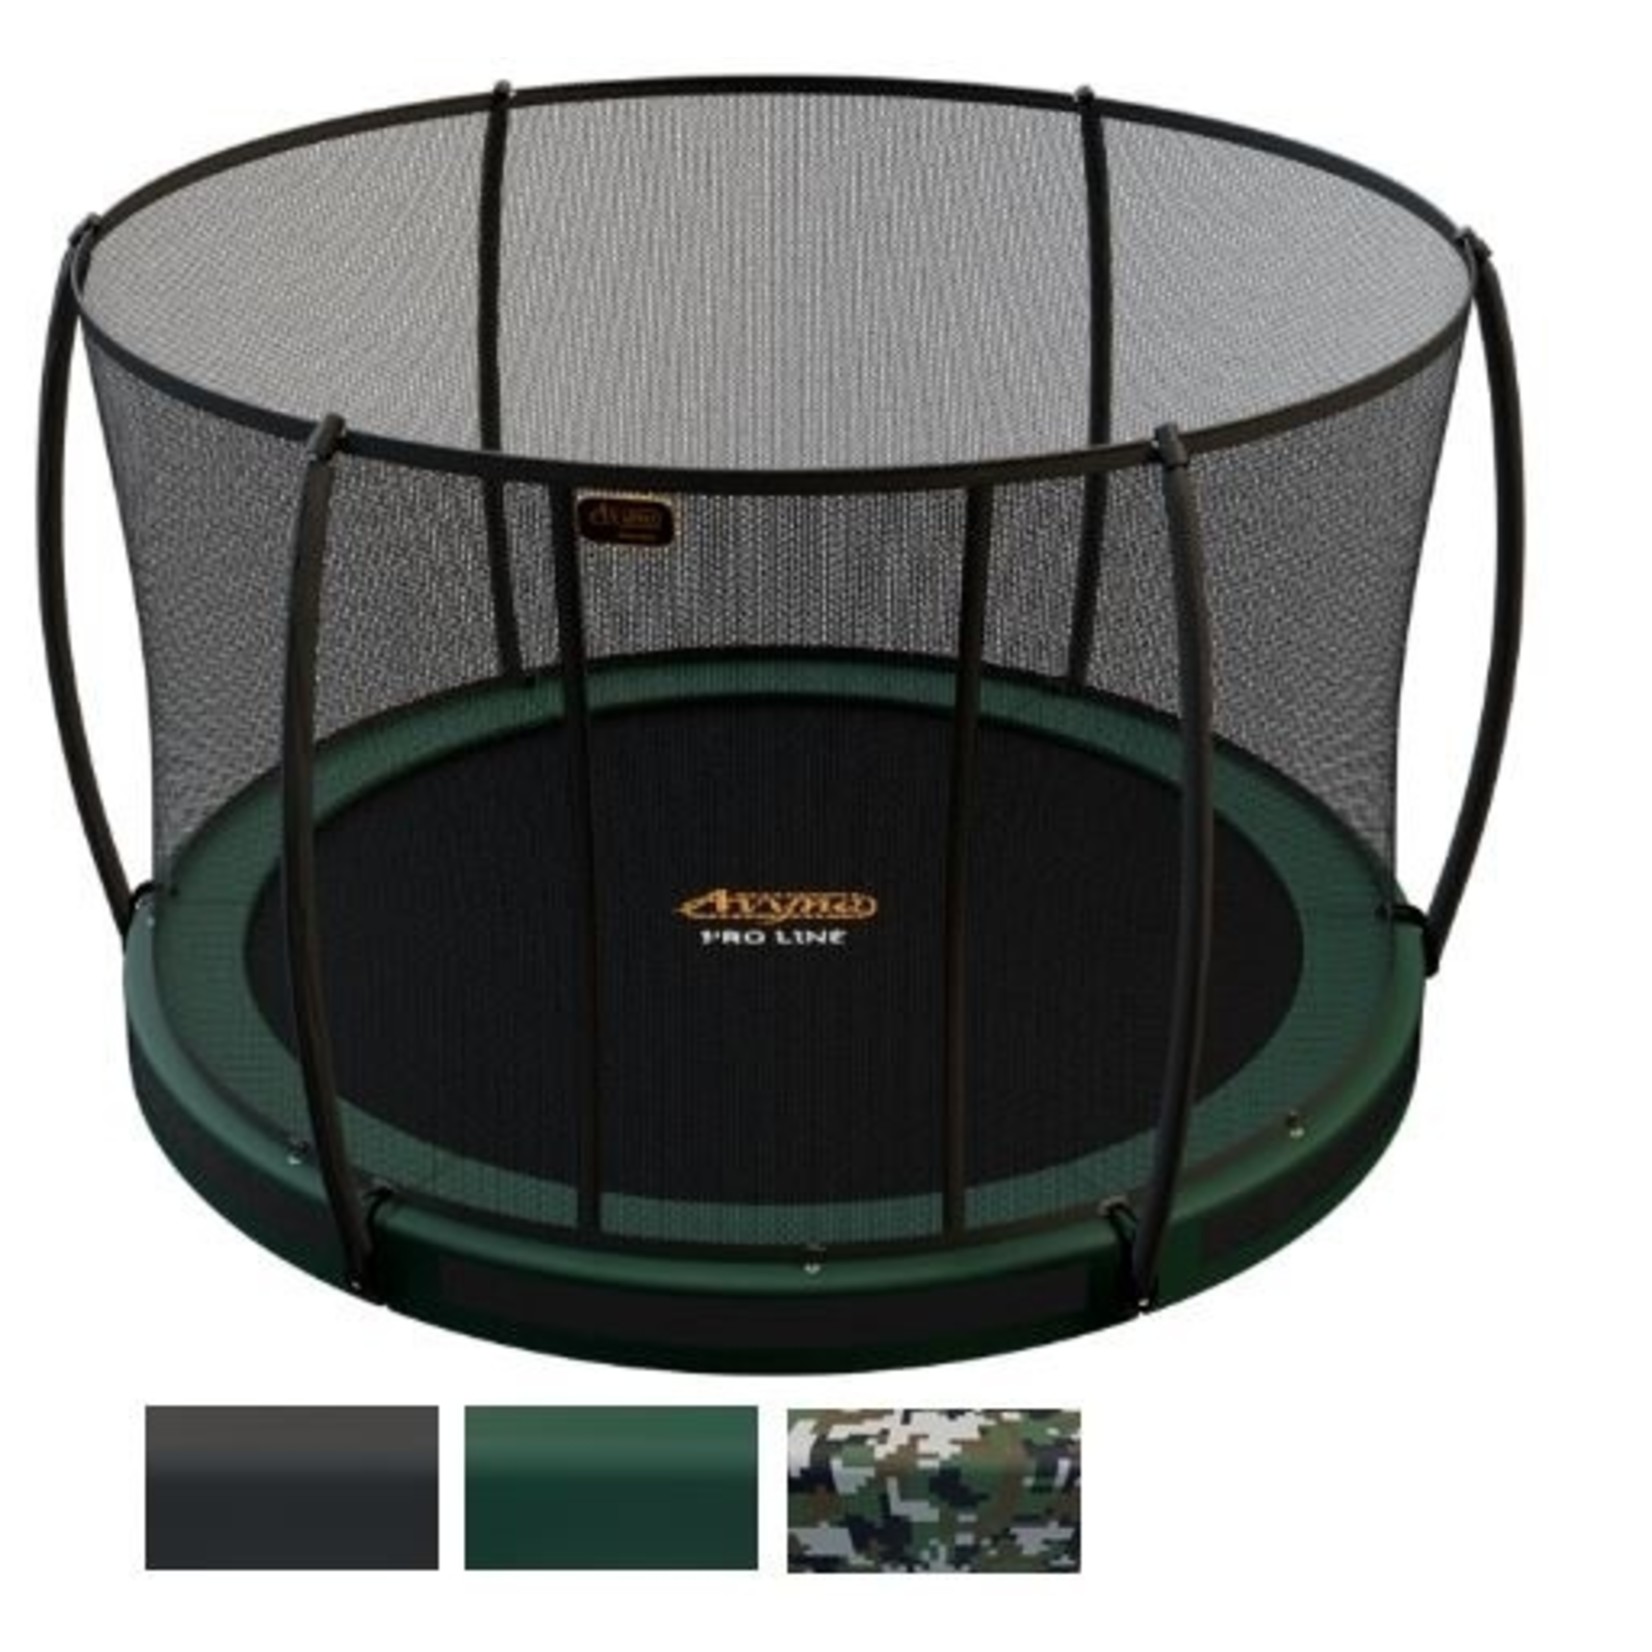 Avyna De ideale ronde trampoline voor in de grond, Inground : de Avyna Pro-Line van 305 cm